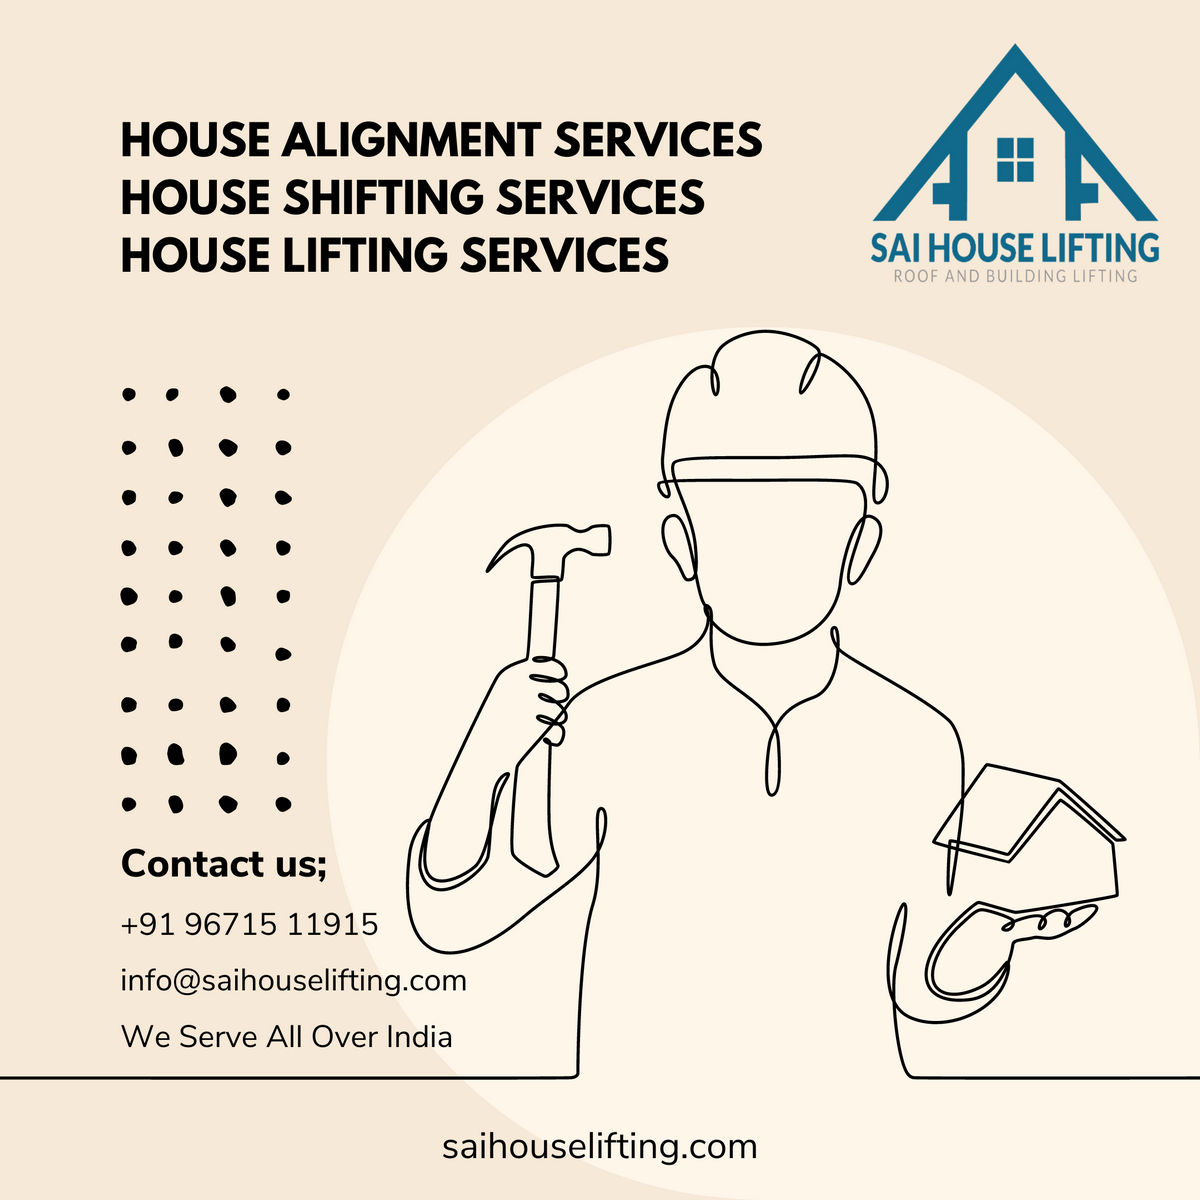 House Lifting Services in Karnataka | House Alignment & Shifting | Sai House Lifting